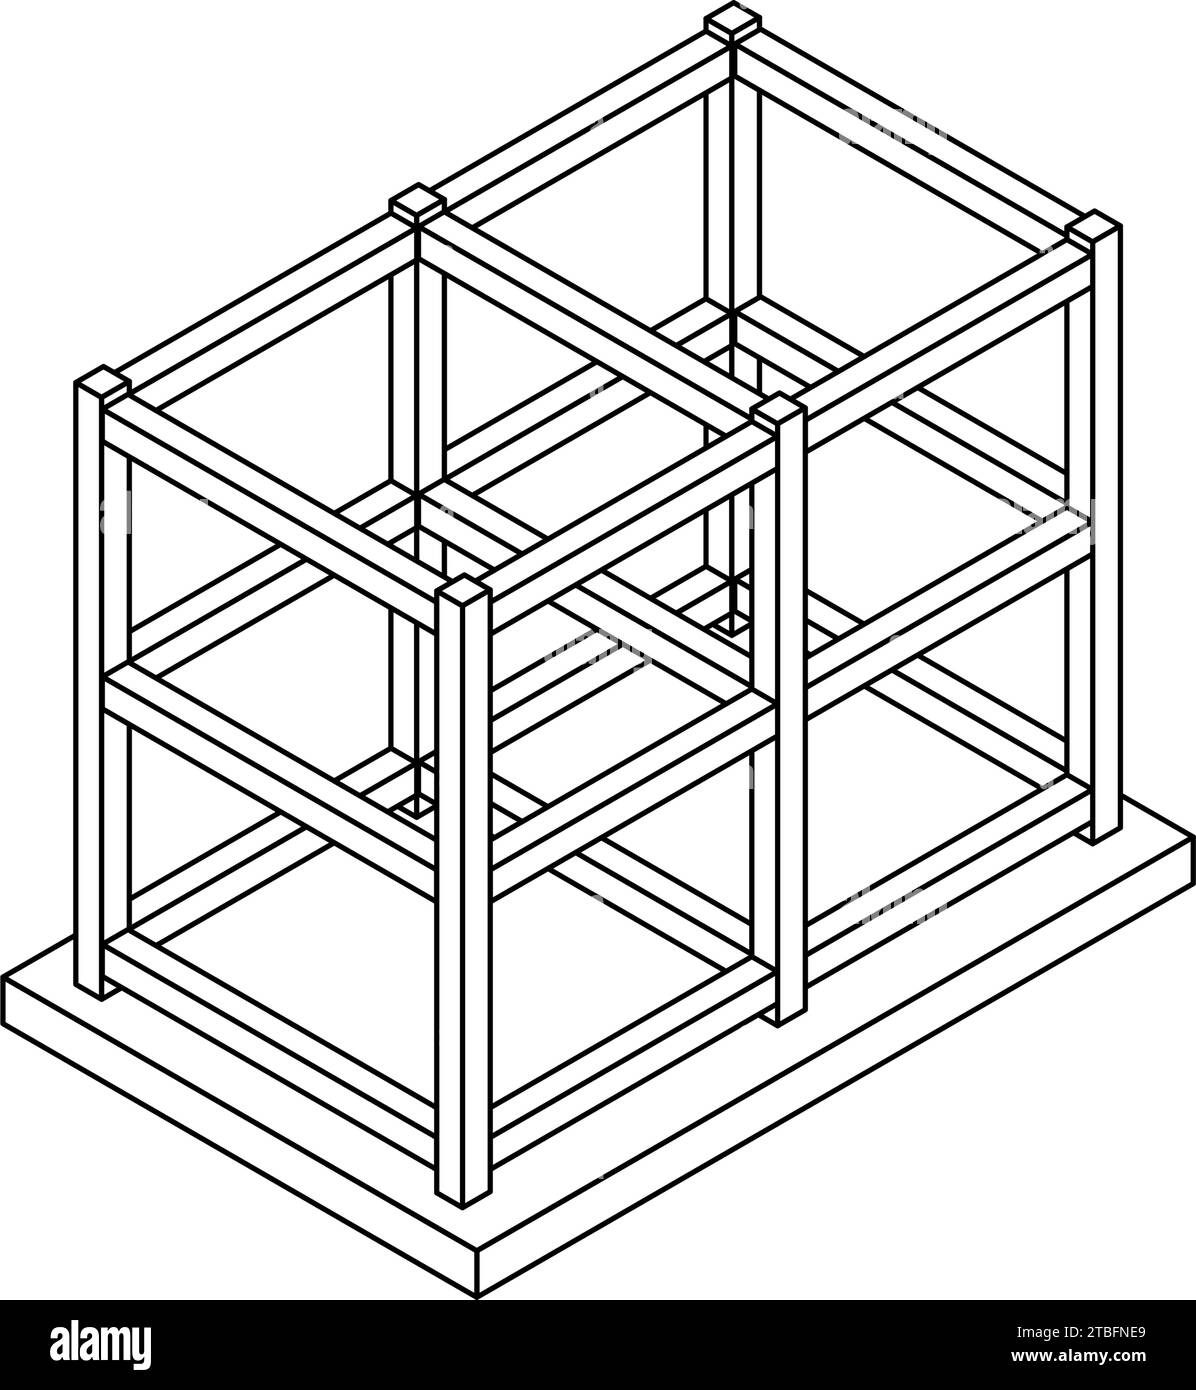 Stahlbeton (RC) Rahmenkonstruktion, Isometrische Abbildungen von Gebäudestrukturen, Vektorillustration Stock Vektor